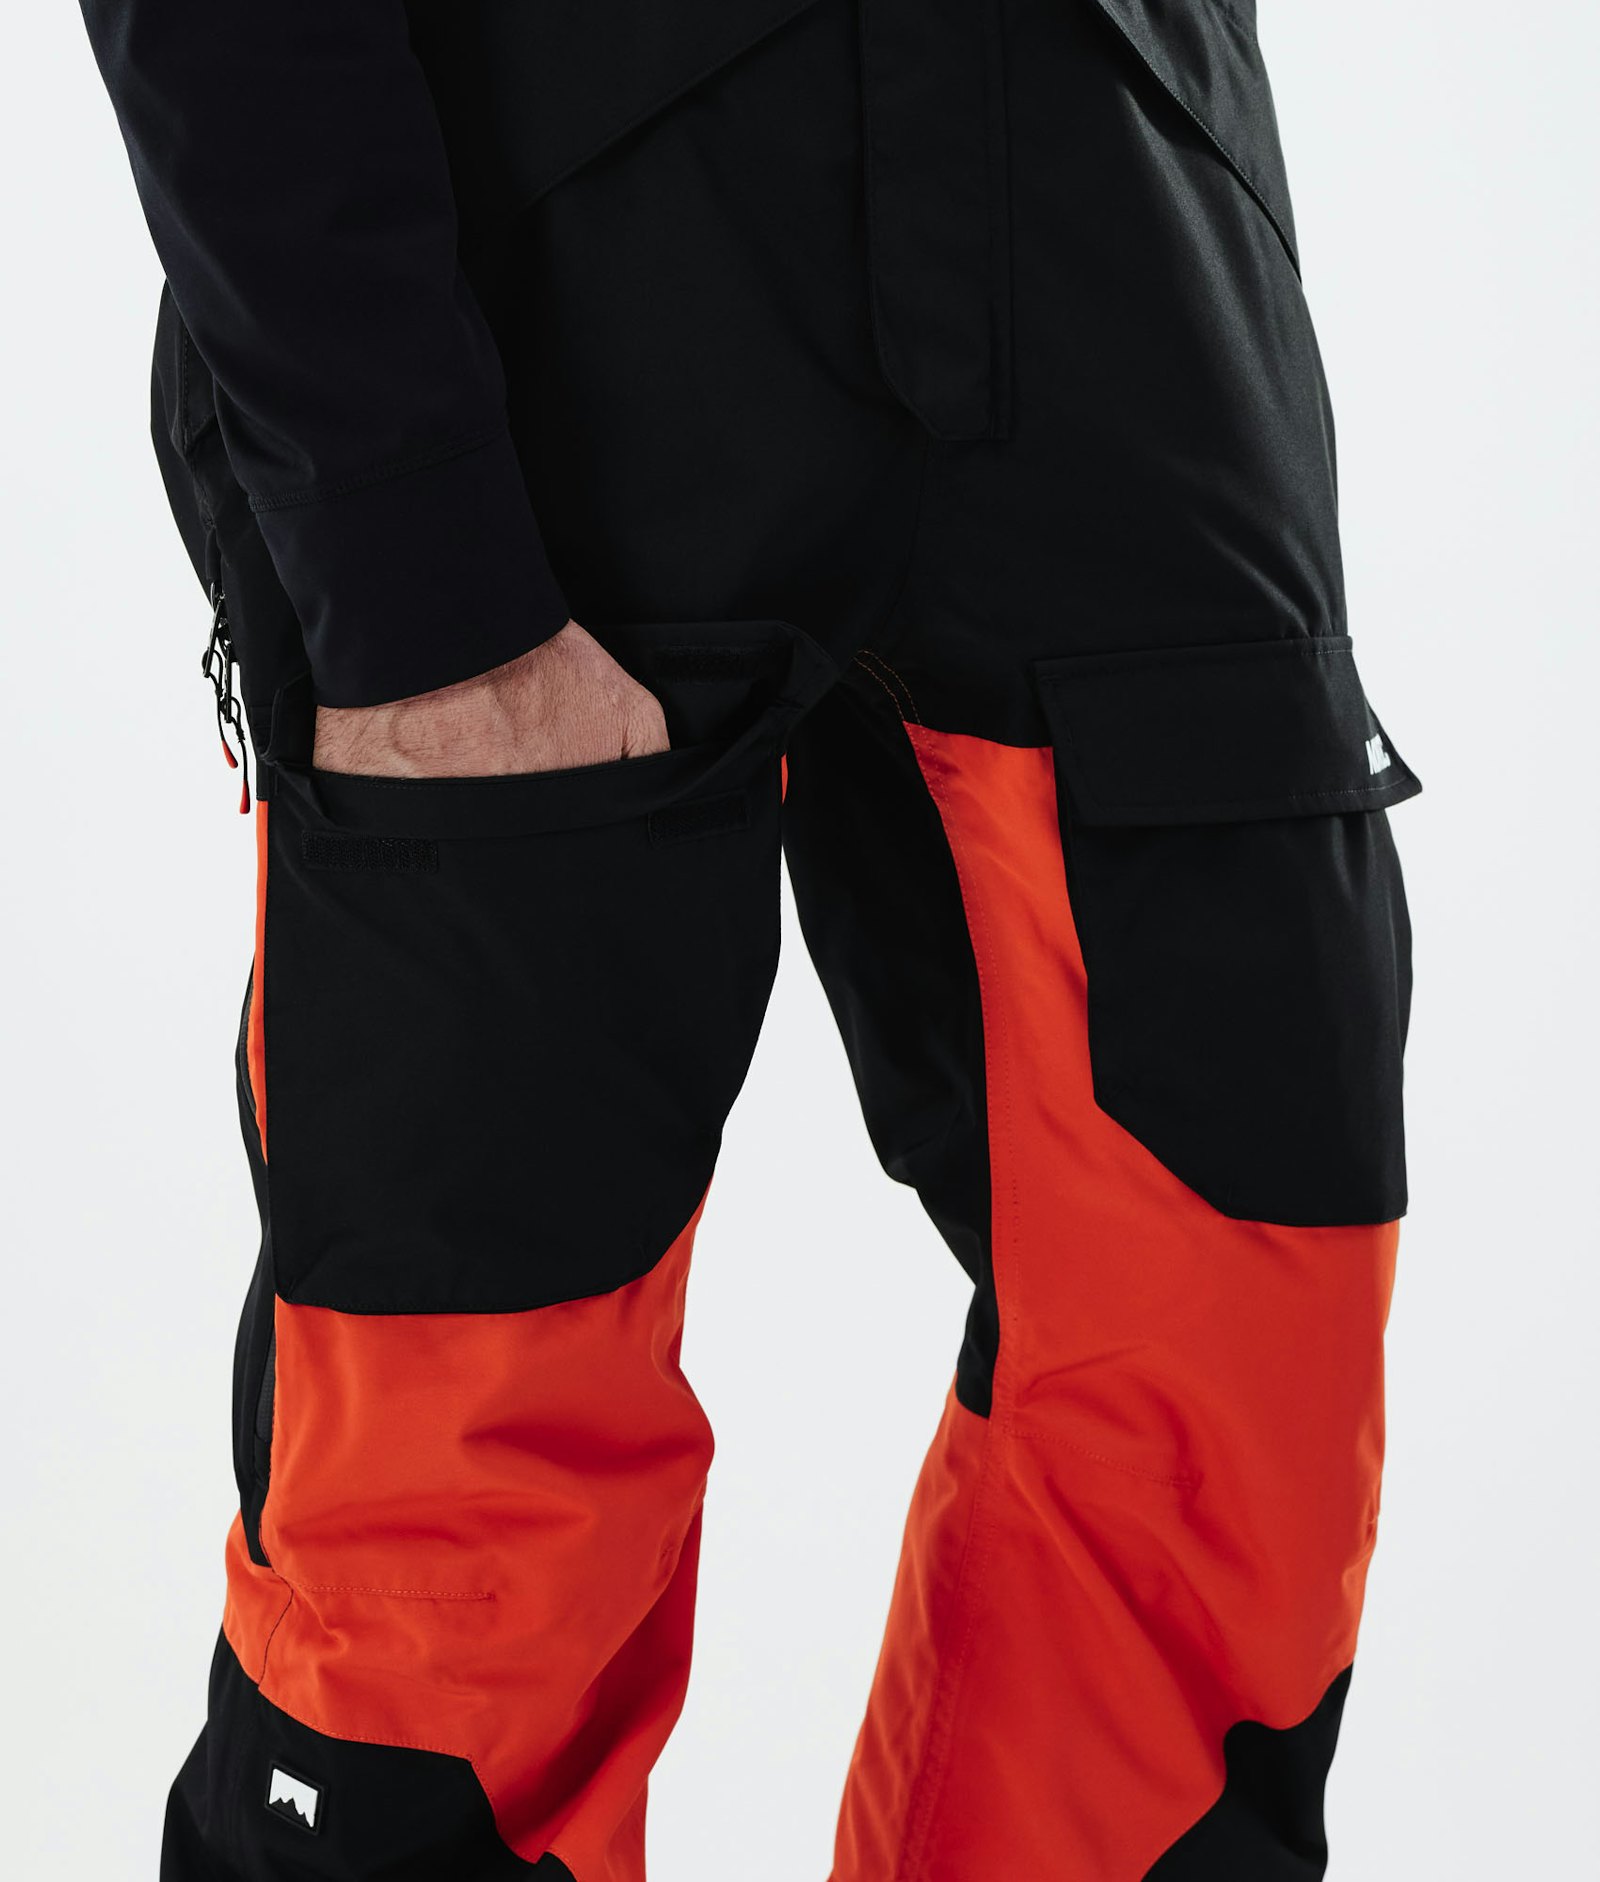 Fawk 2021 Pantaloni Sci Uomo Black/Orange